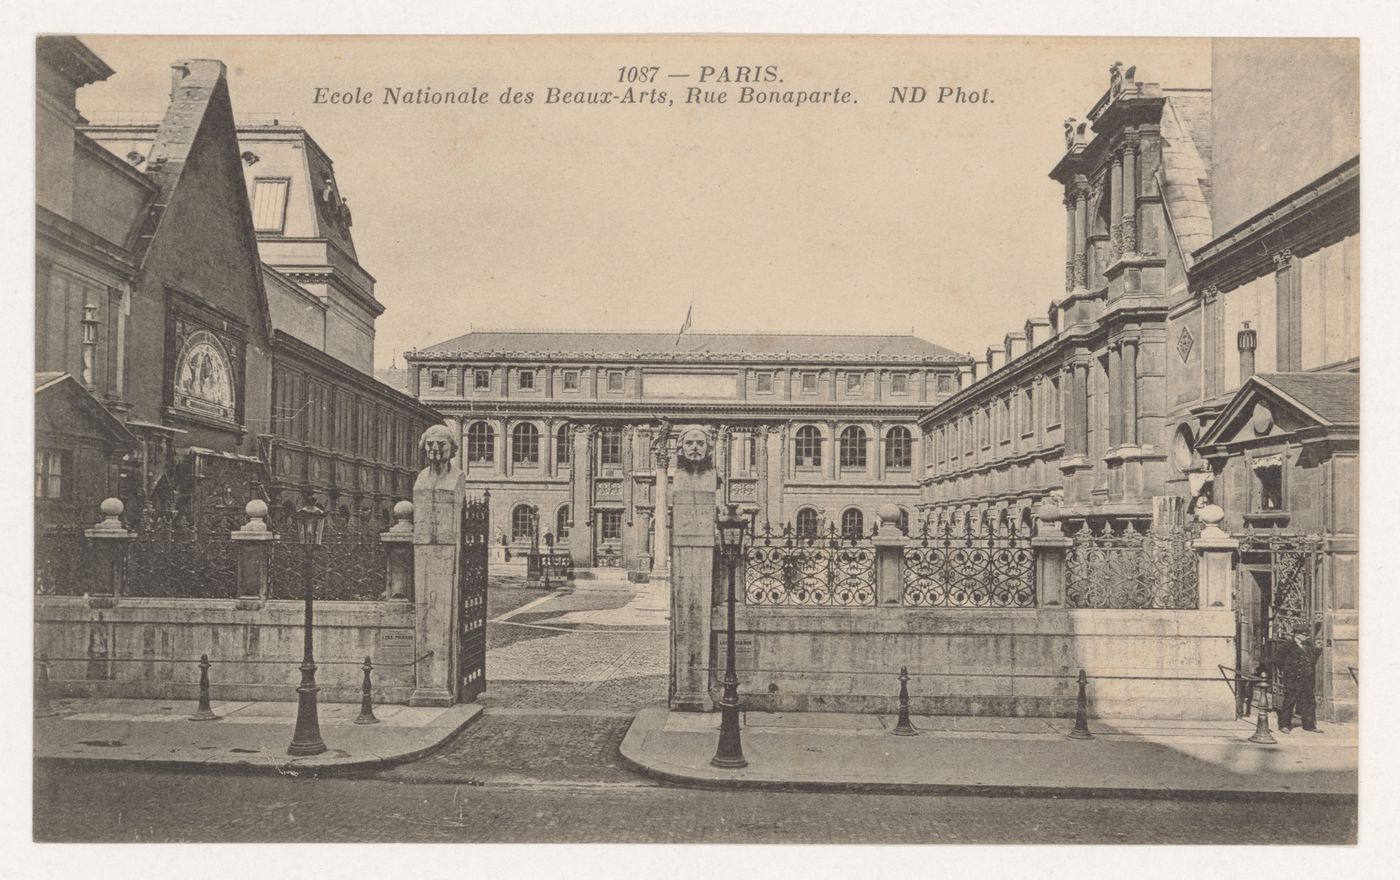 Carte postale de l'École nationale des beaux-arts de la rue Bonaparte, Paris, France